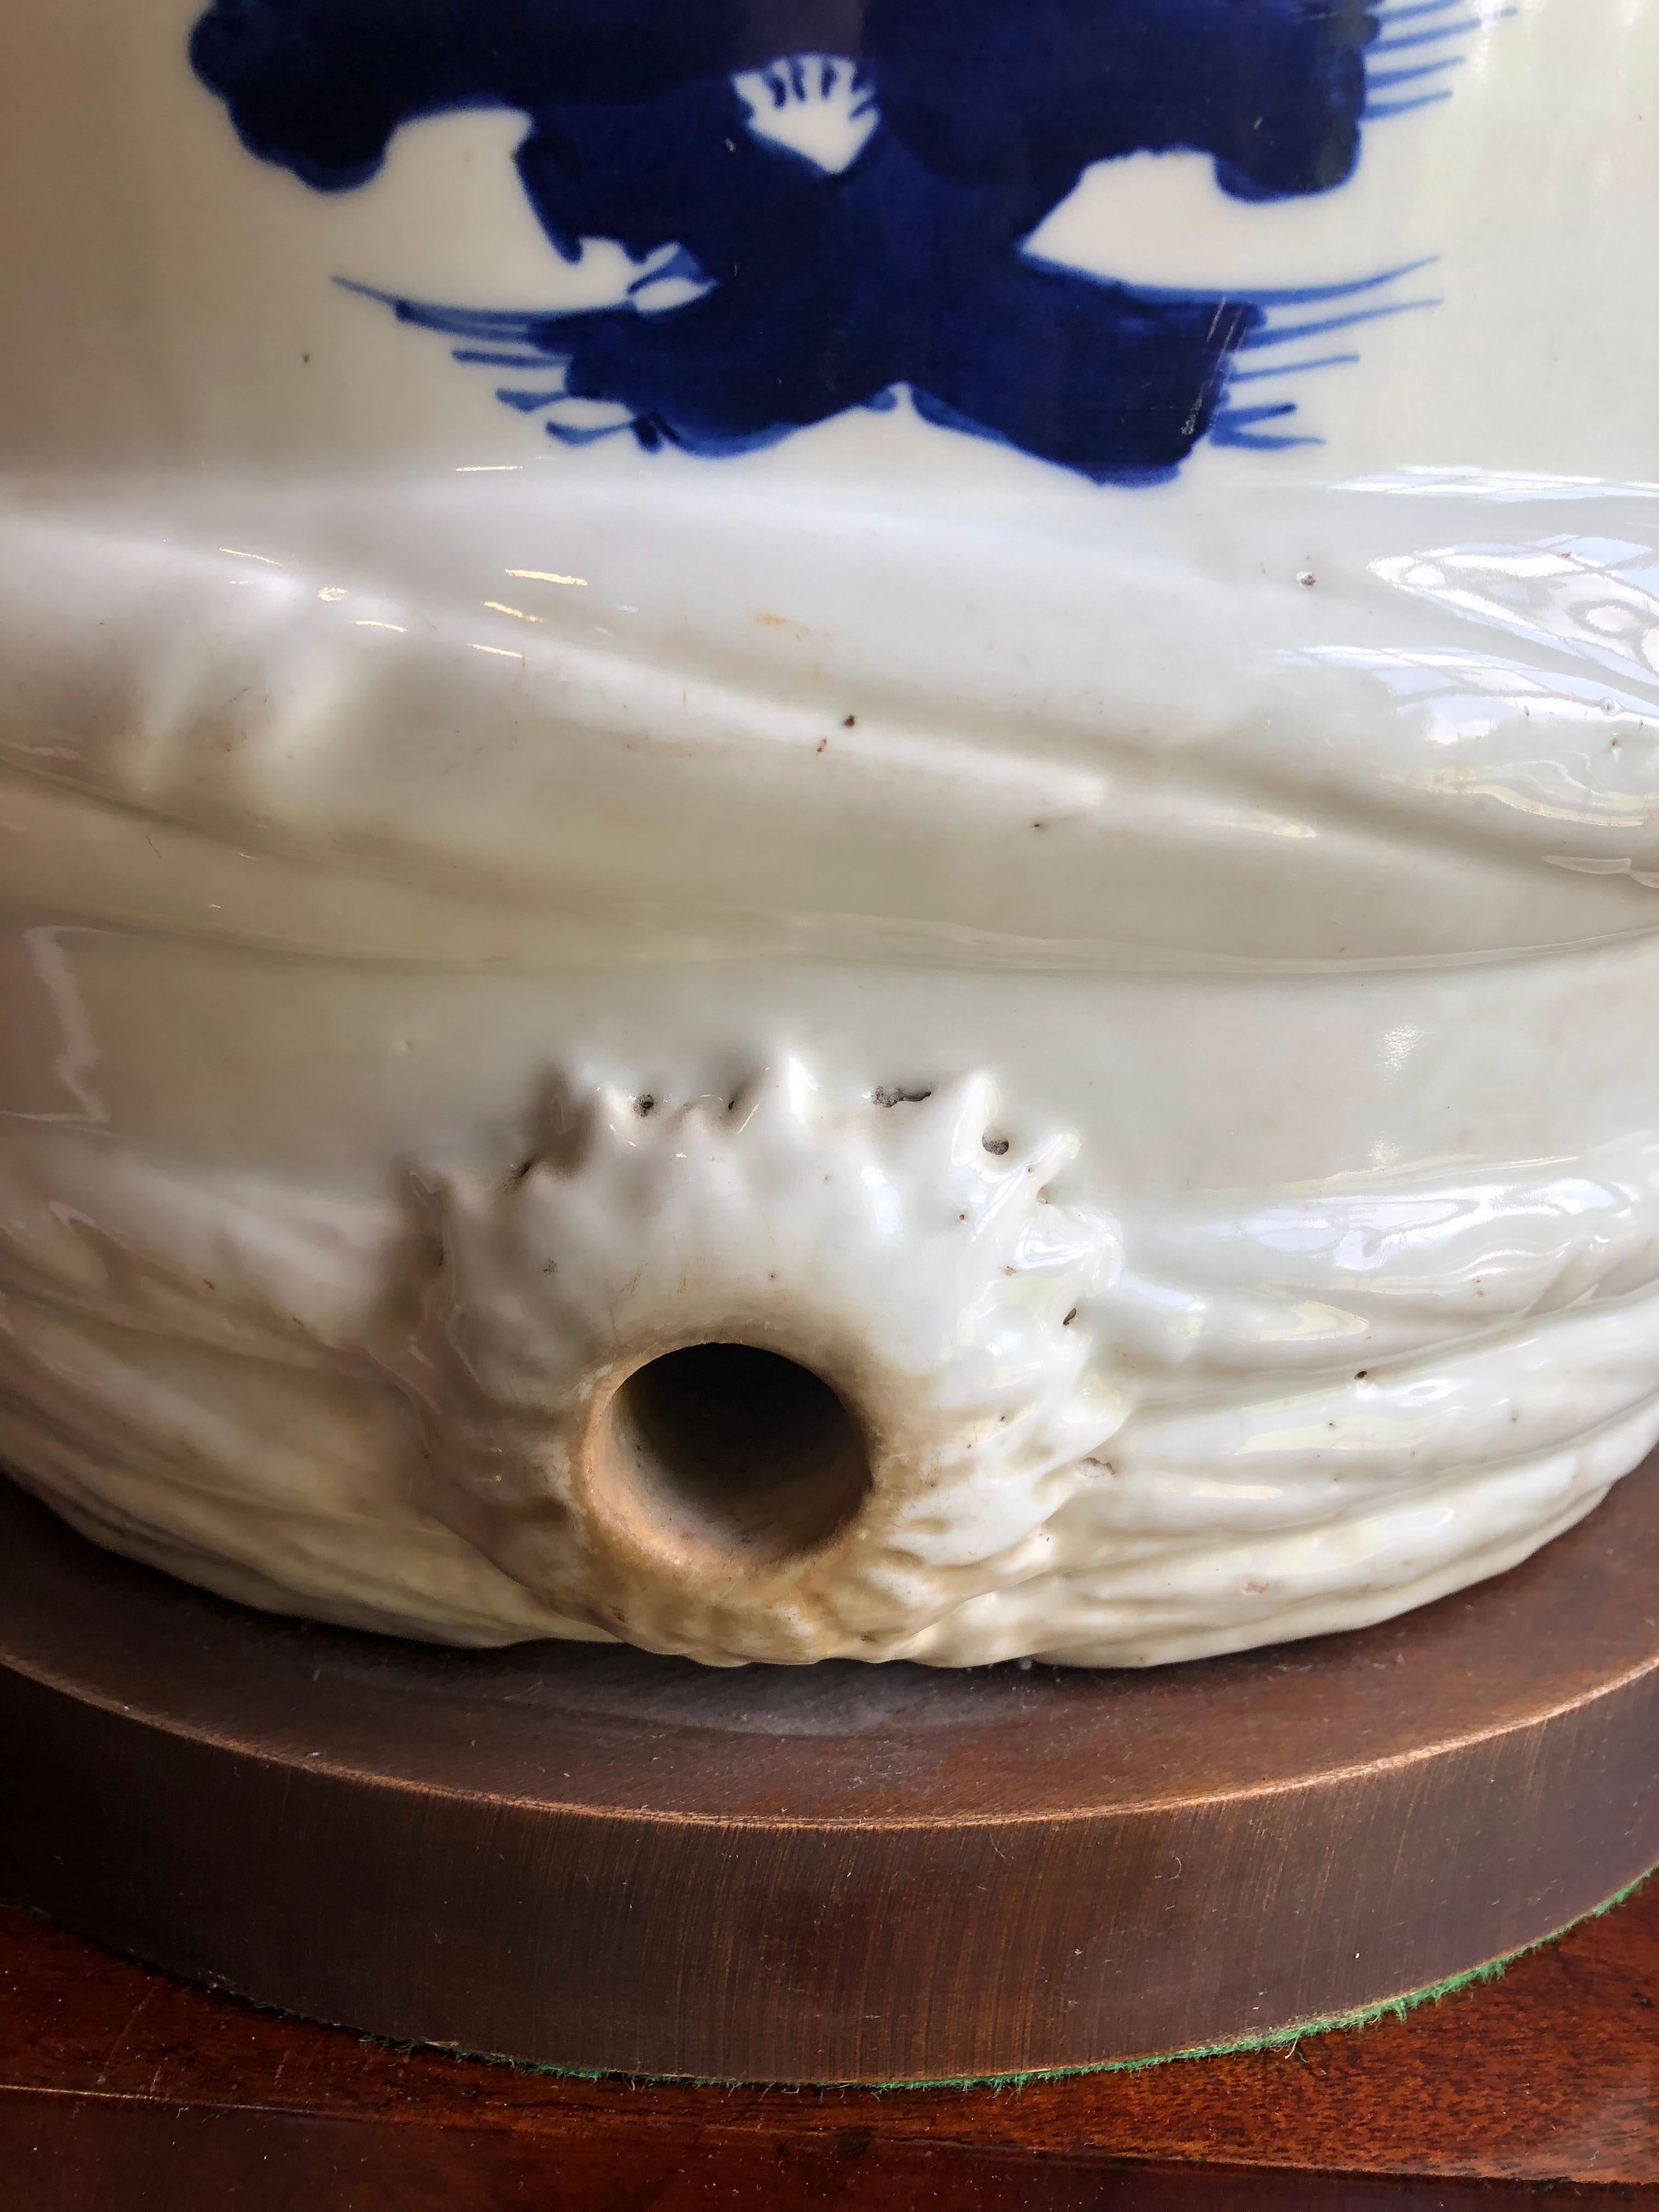 20th Century Ceramic Japanese Sake Barrel, Mounted as Lamp